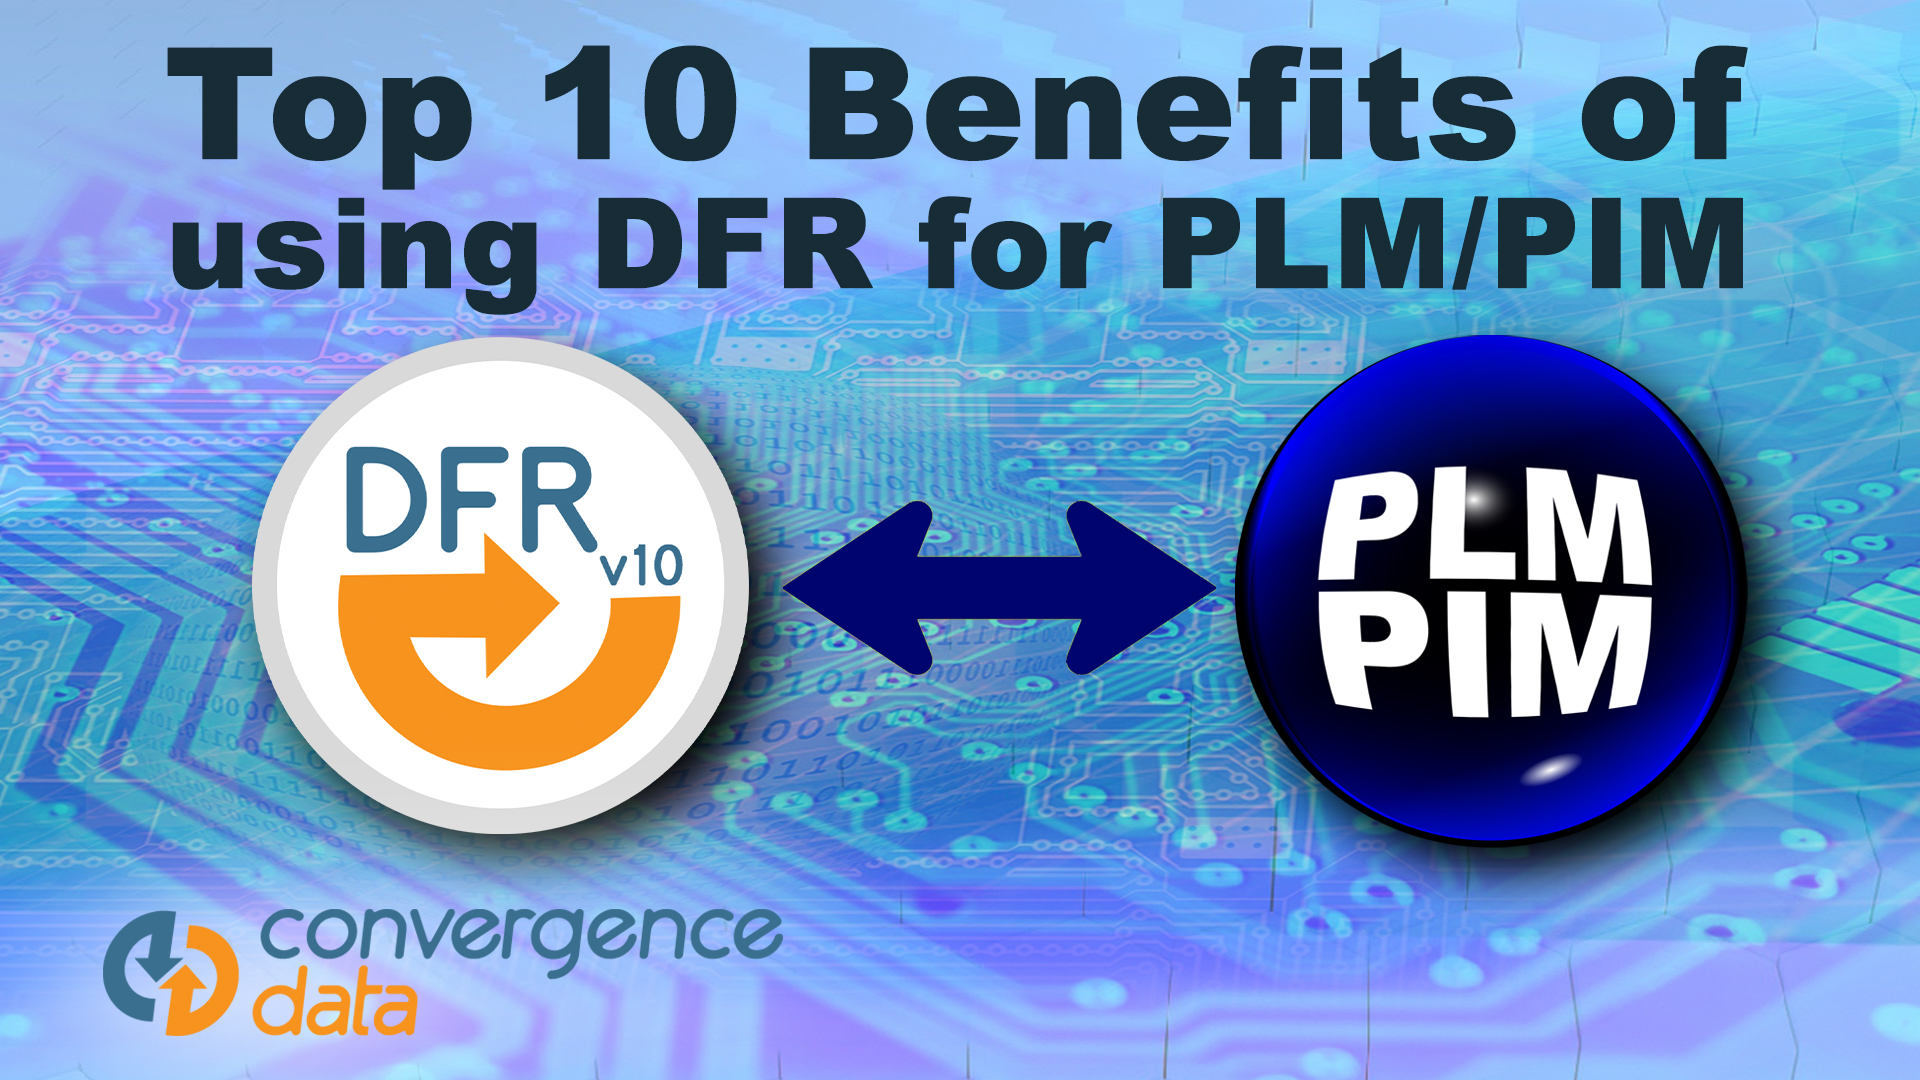 Top 10 Benefits DFR PLM 1